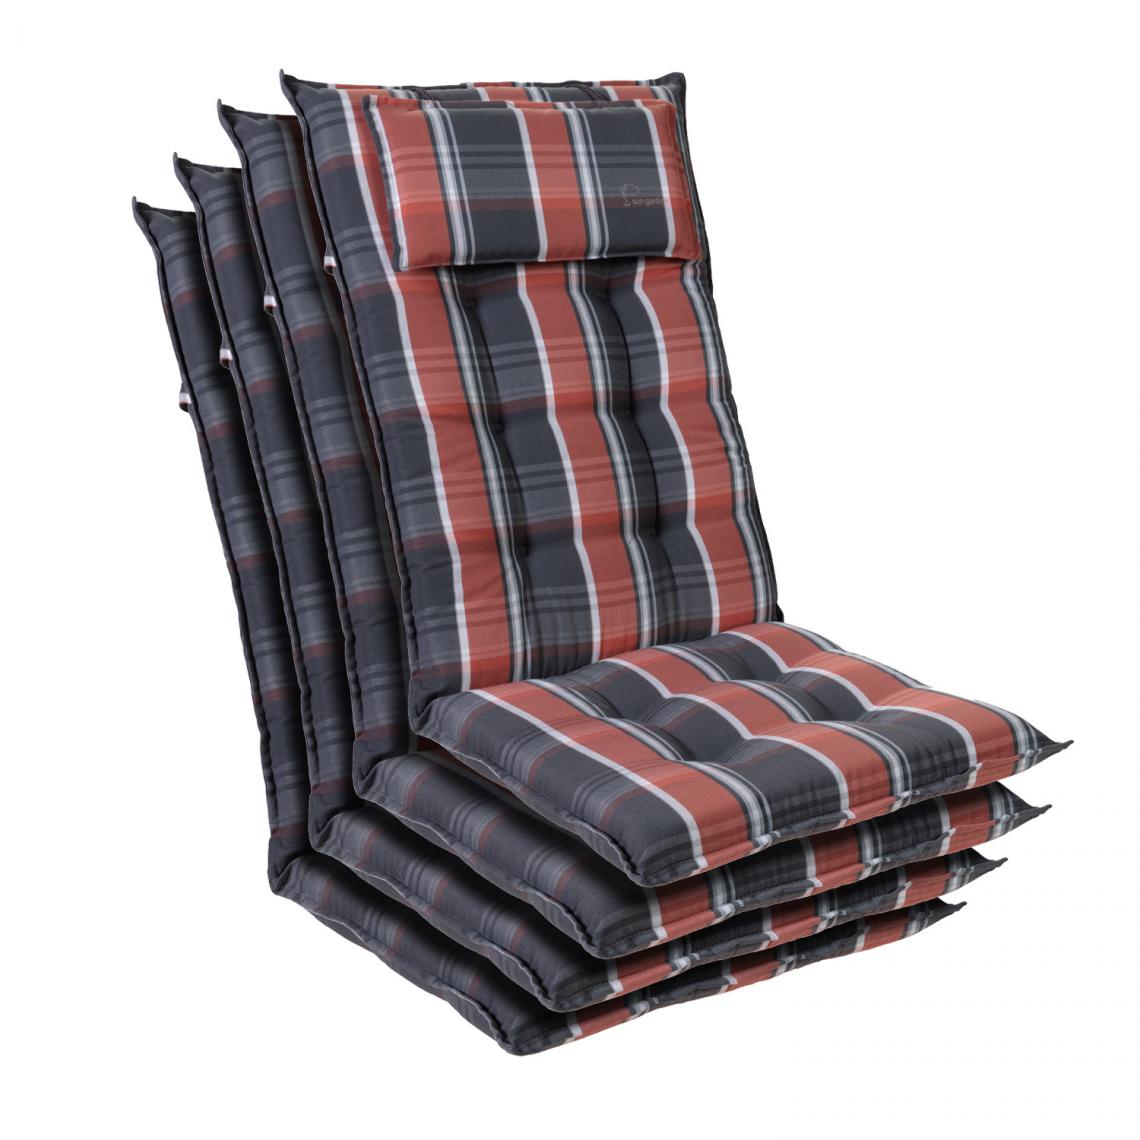 Blumfeldt - Sylt coussin de fauteuil appuie-tête pour dossier haut Polyester 50x120x9cm - Noir Rouge - Coussins, galettes de jardin